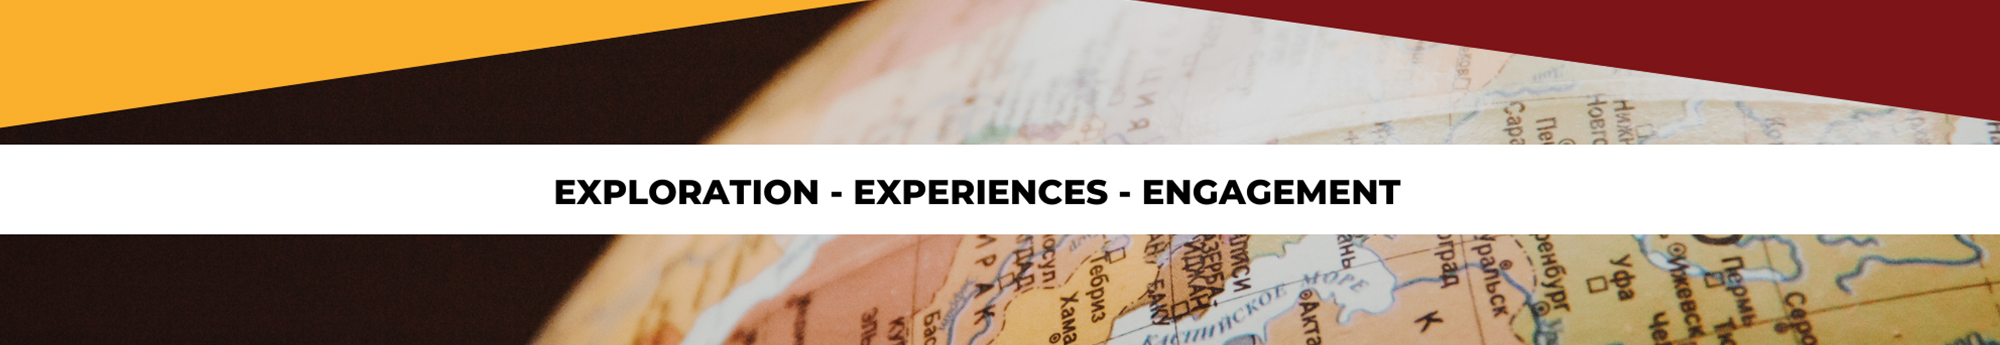 Exploration - Experiences - Engagement